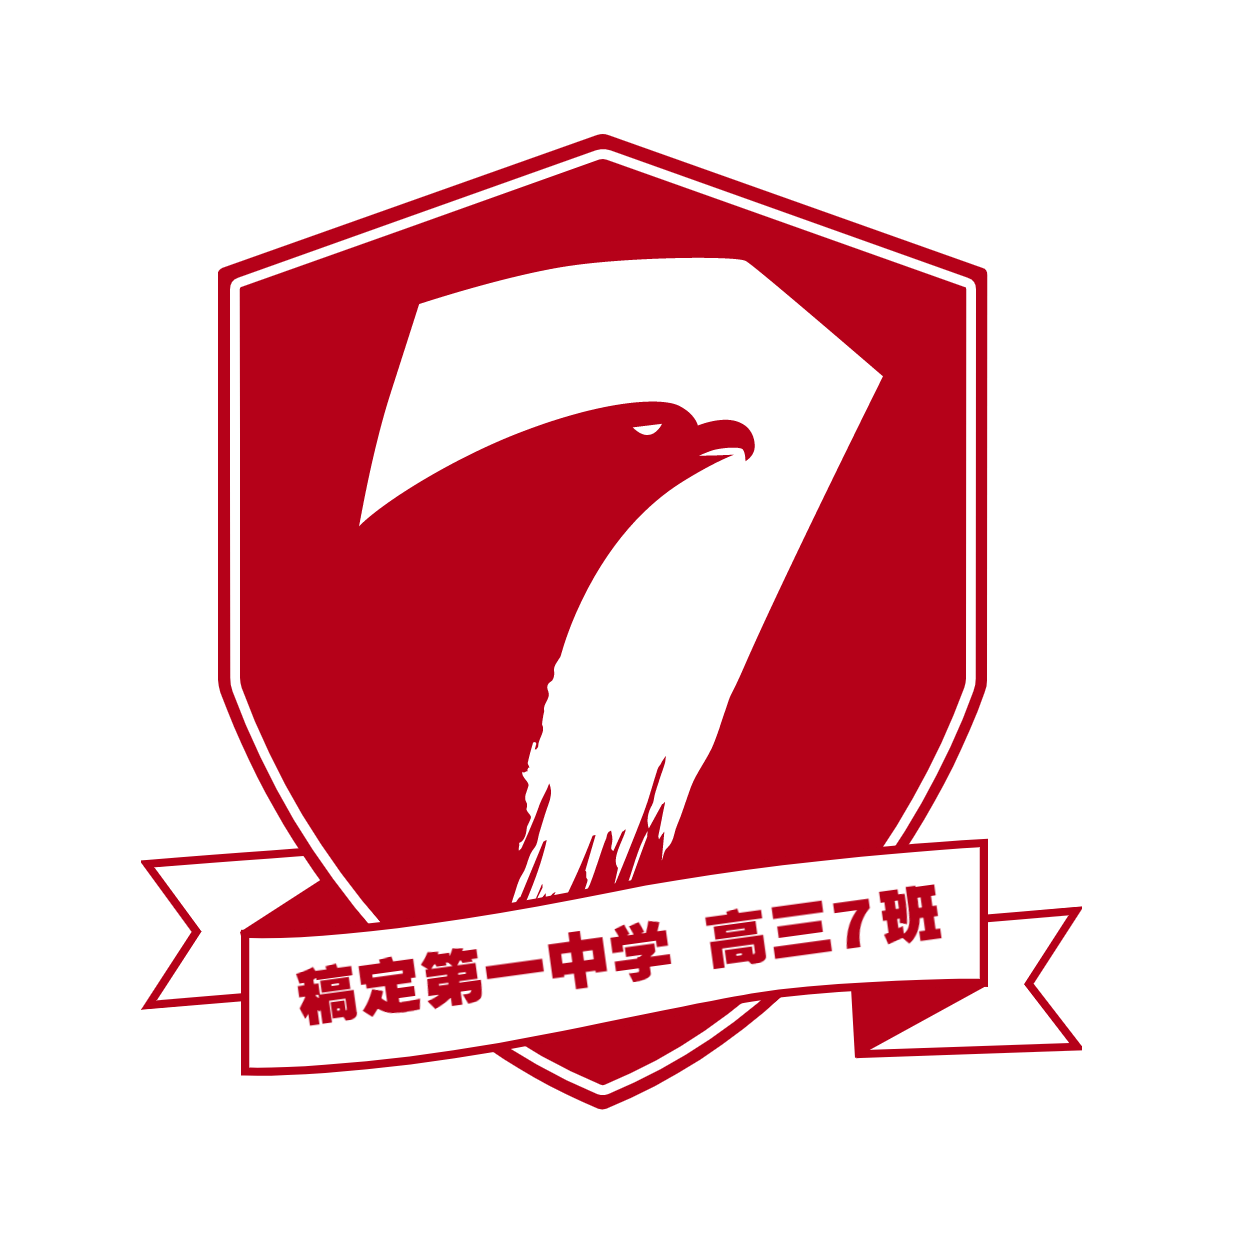 7班班徽logo设计及寓意图片